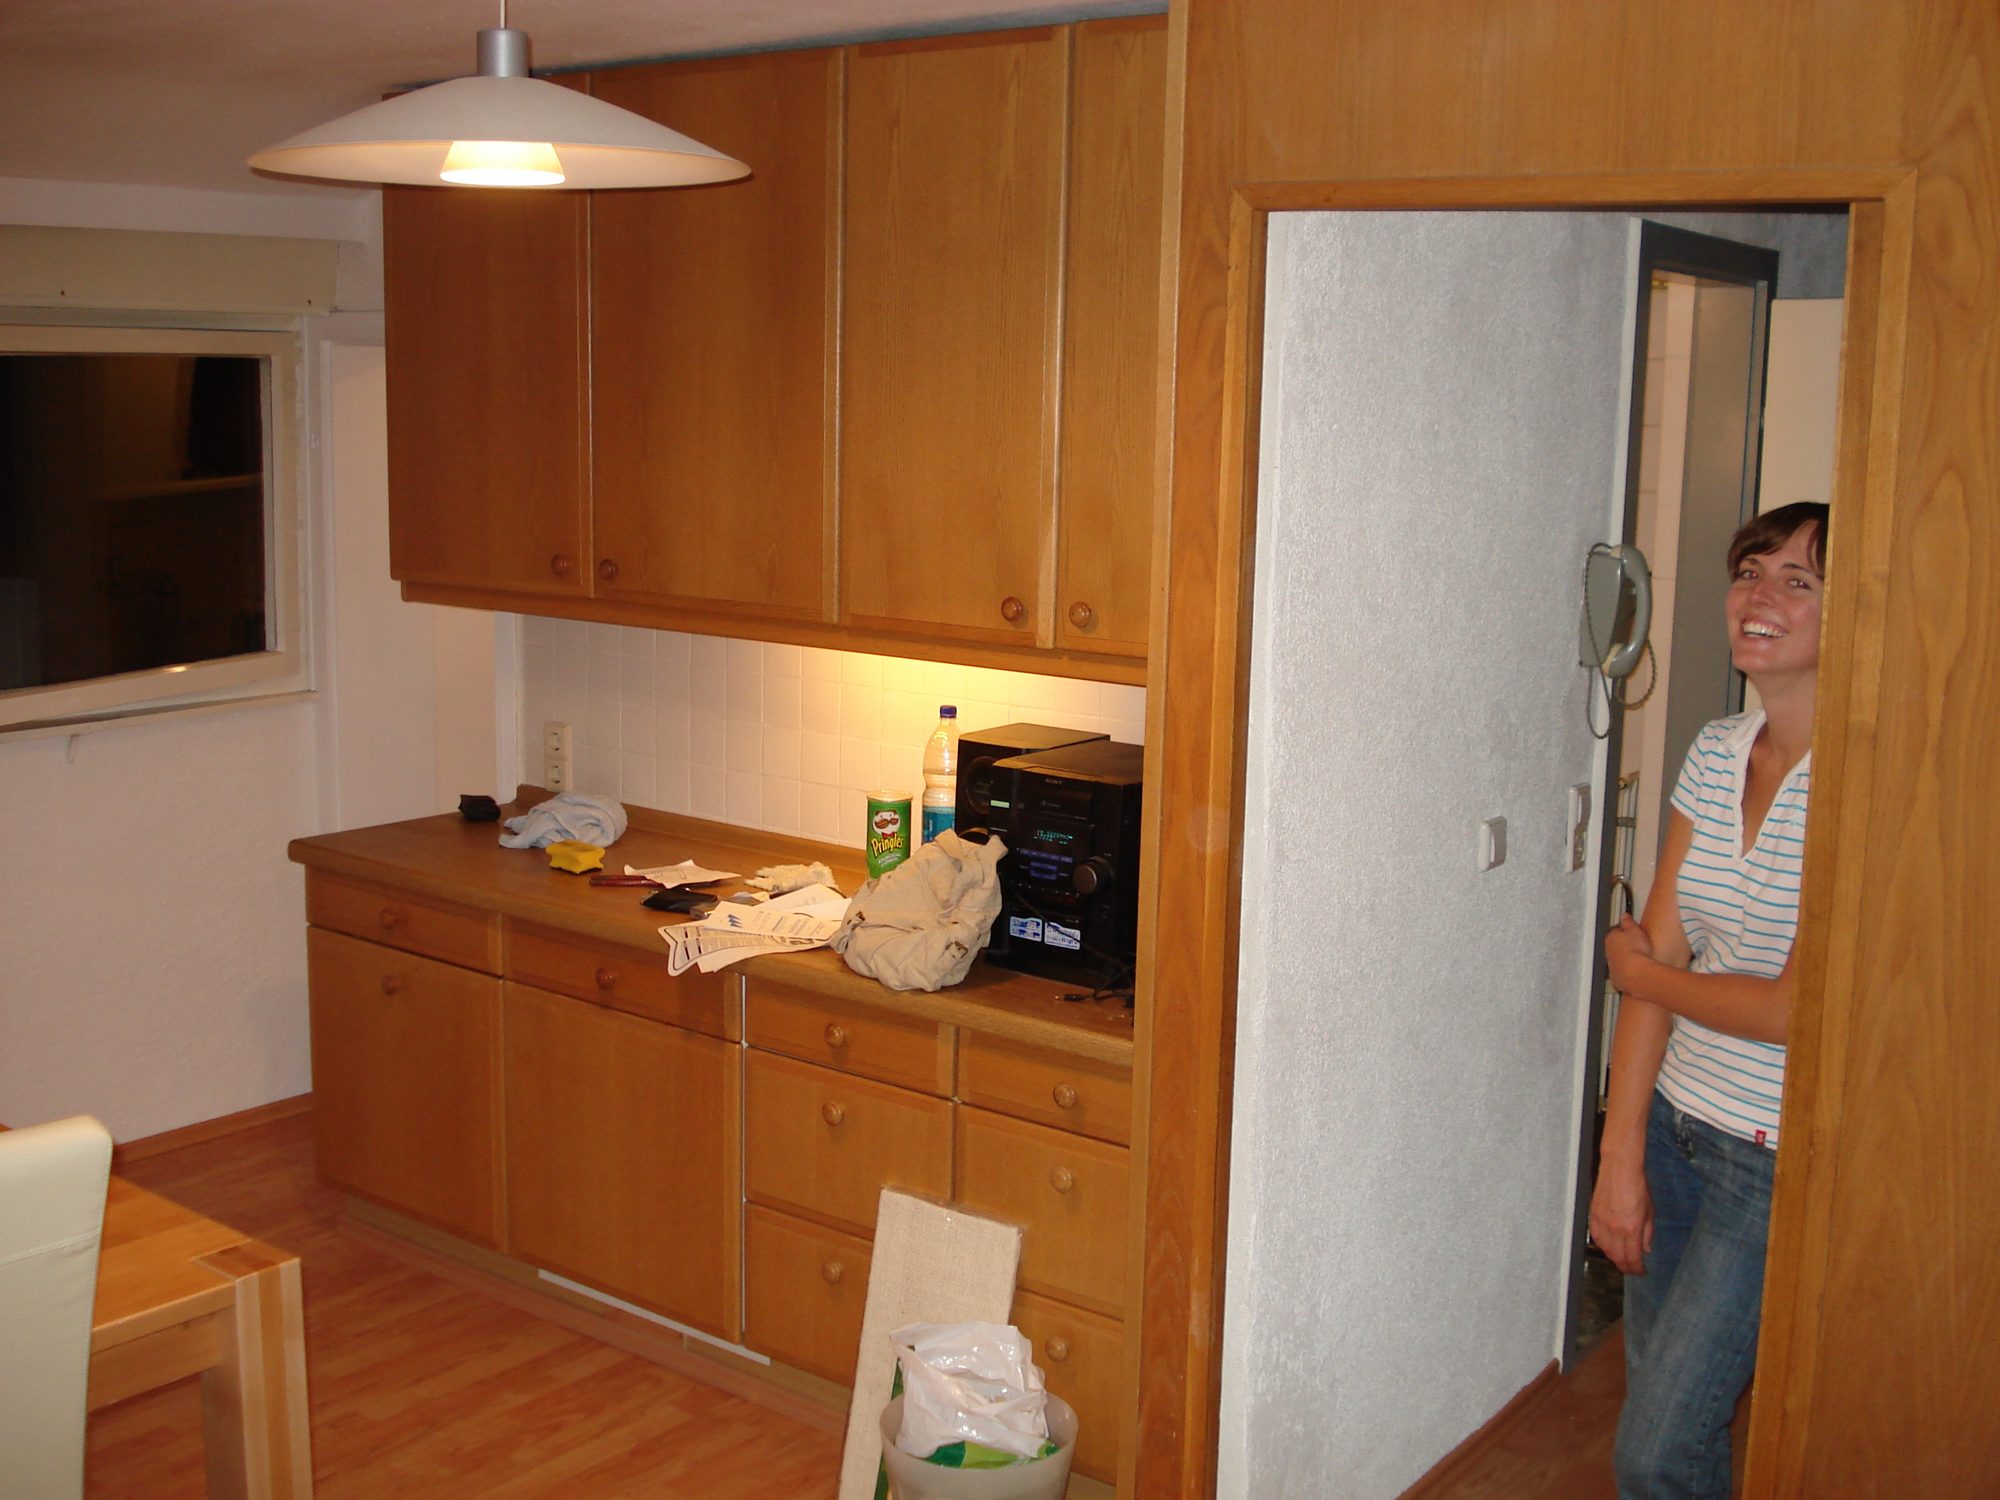 2007 - Kaltental: erste gemeinsame Wohnung